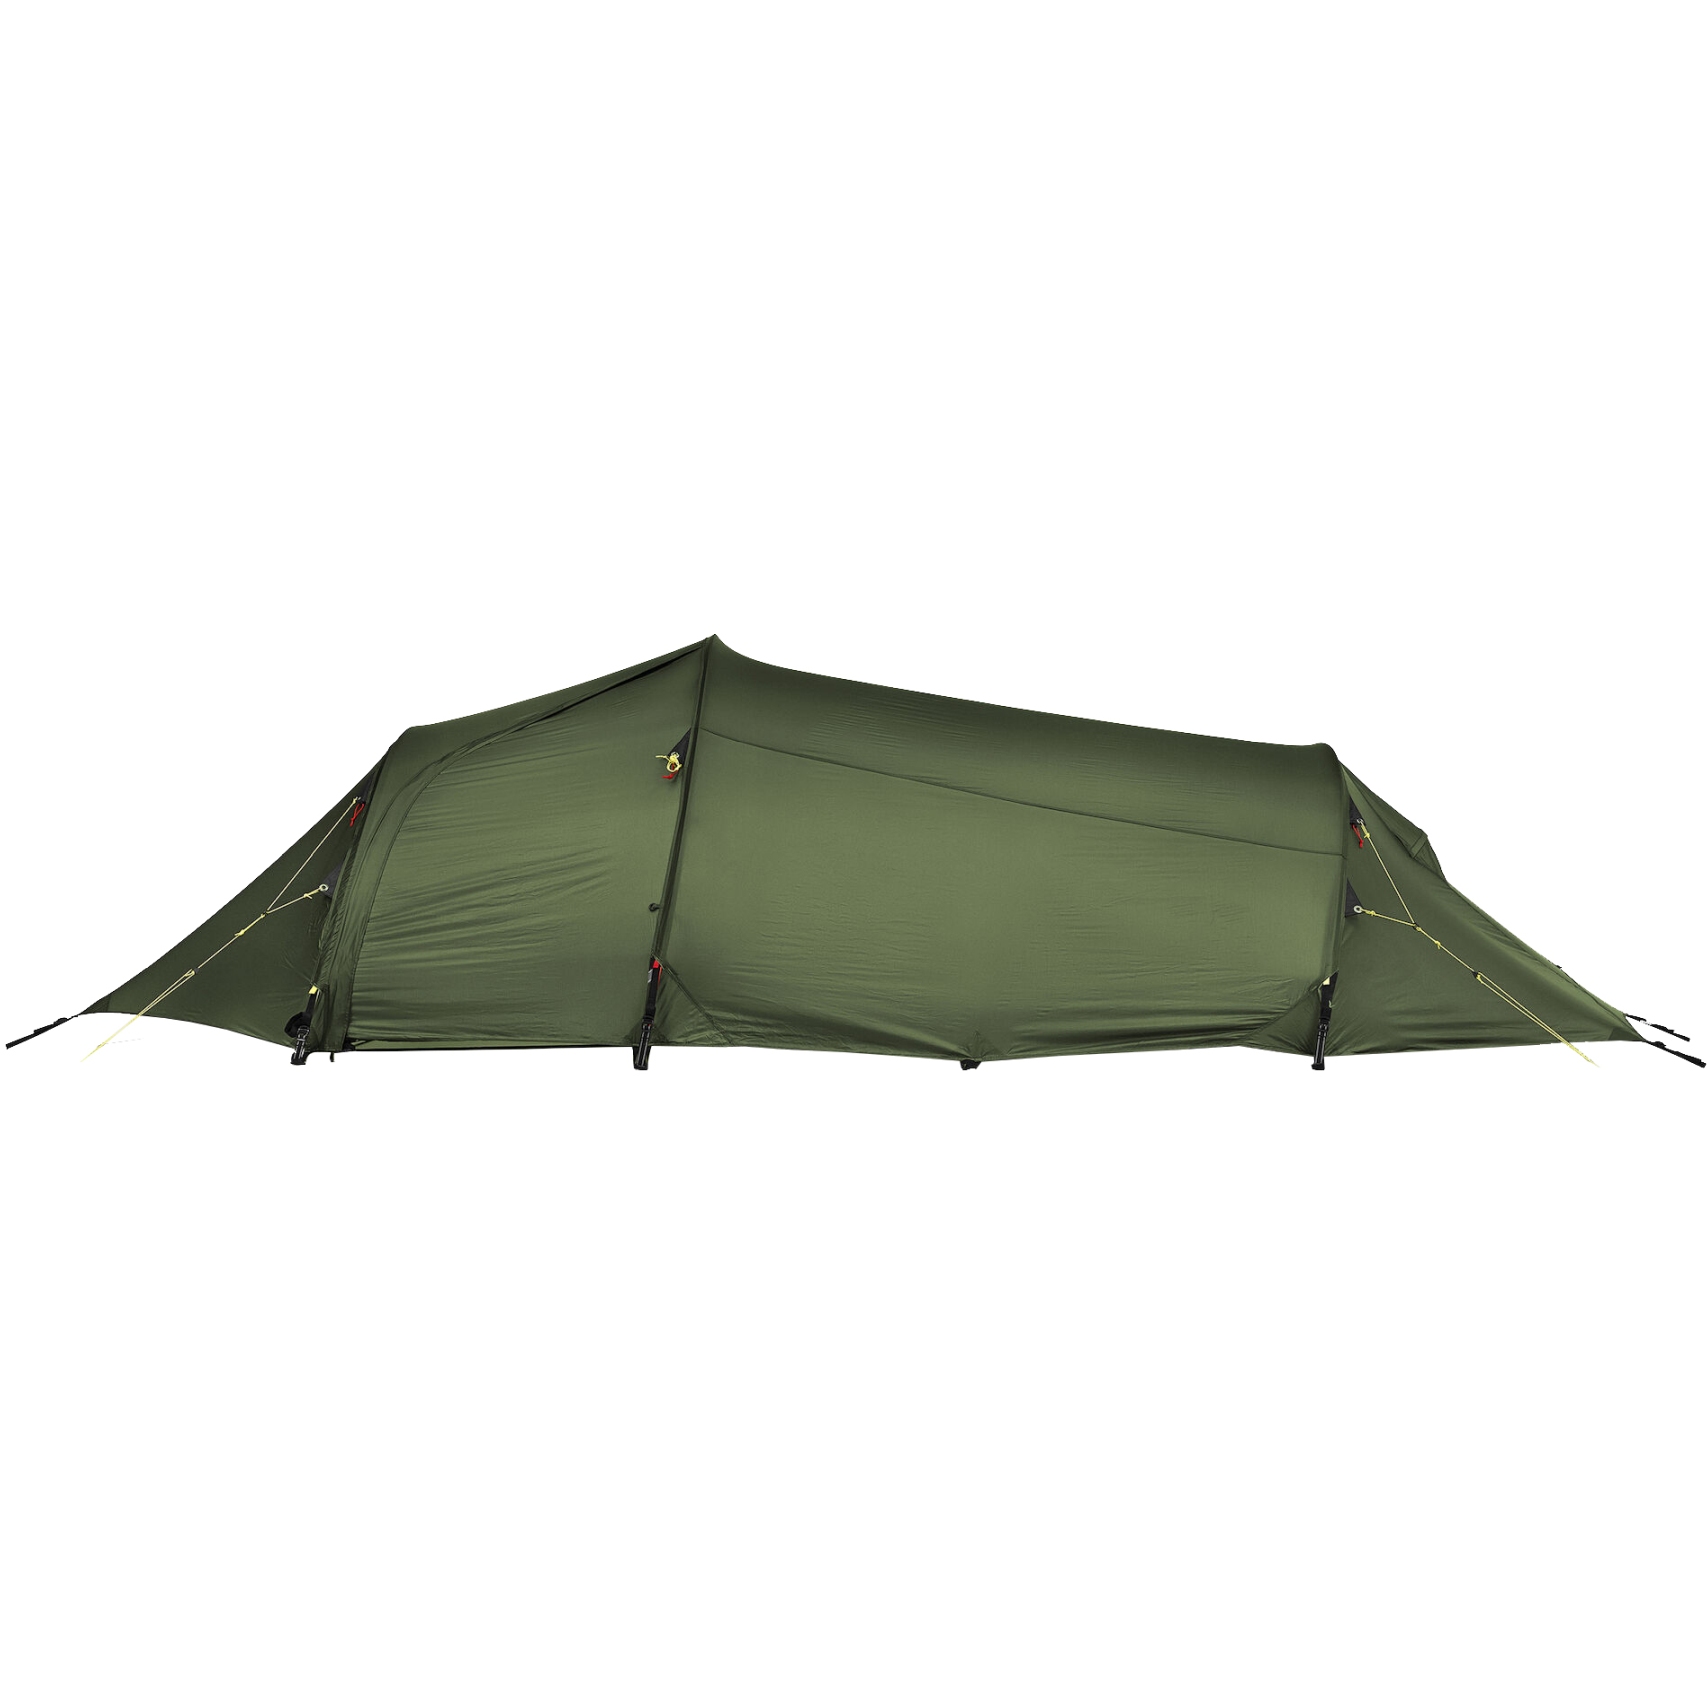 Productfoto van Helsport Lofoten Pro 2 Camp Tent - groen